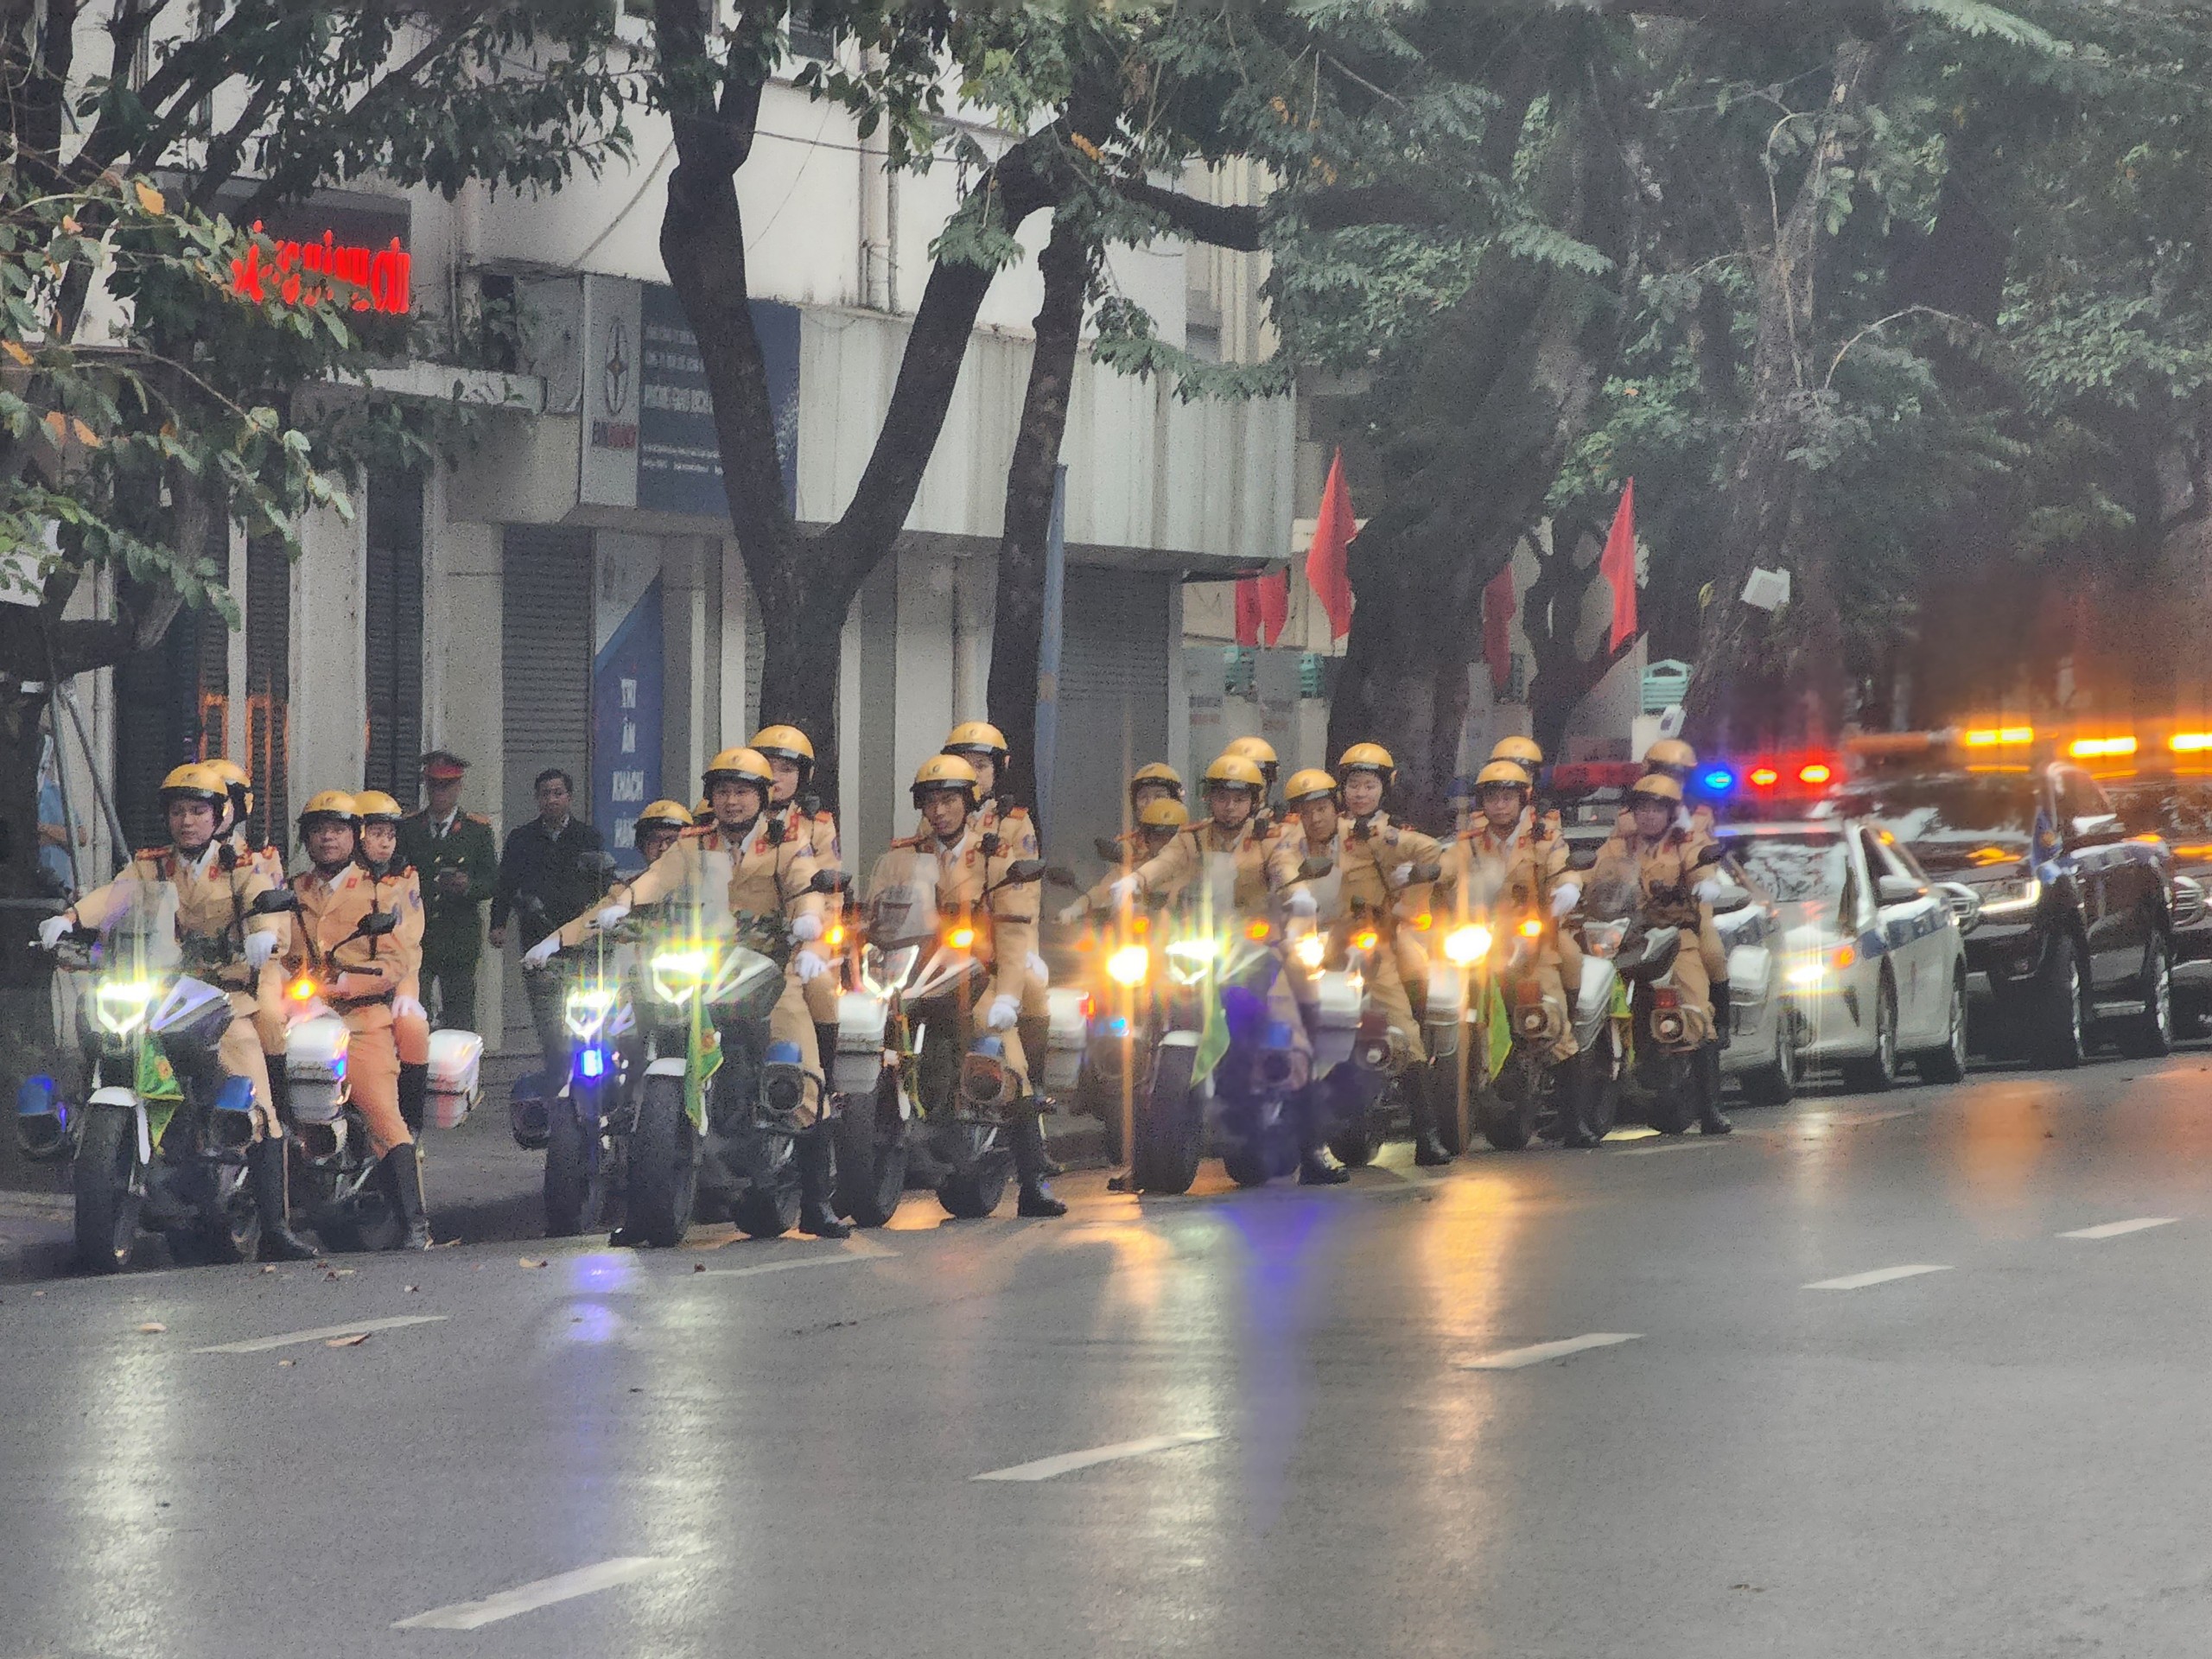 Phó Thủ tướng Trần Lưu Quang: Nêu gương "Thượng tôn pháp luật" để xây dựng văn hóa giao thông an toàn- Ảnh 1.